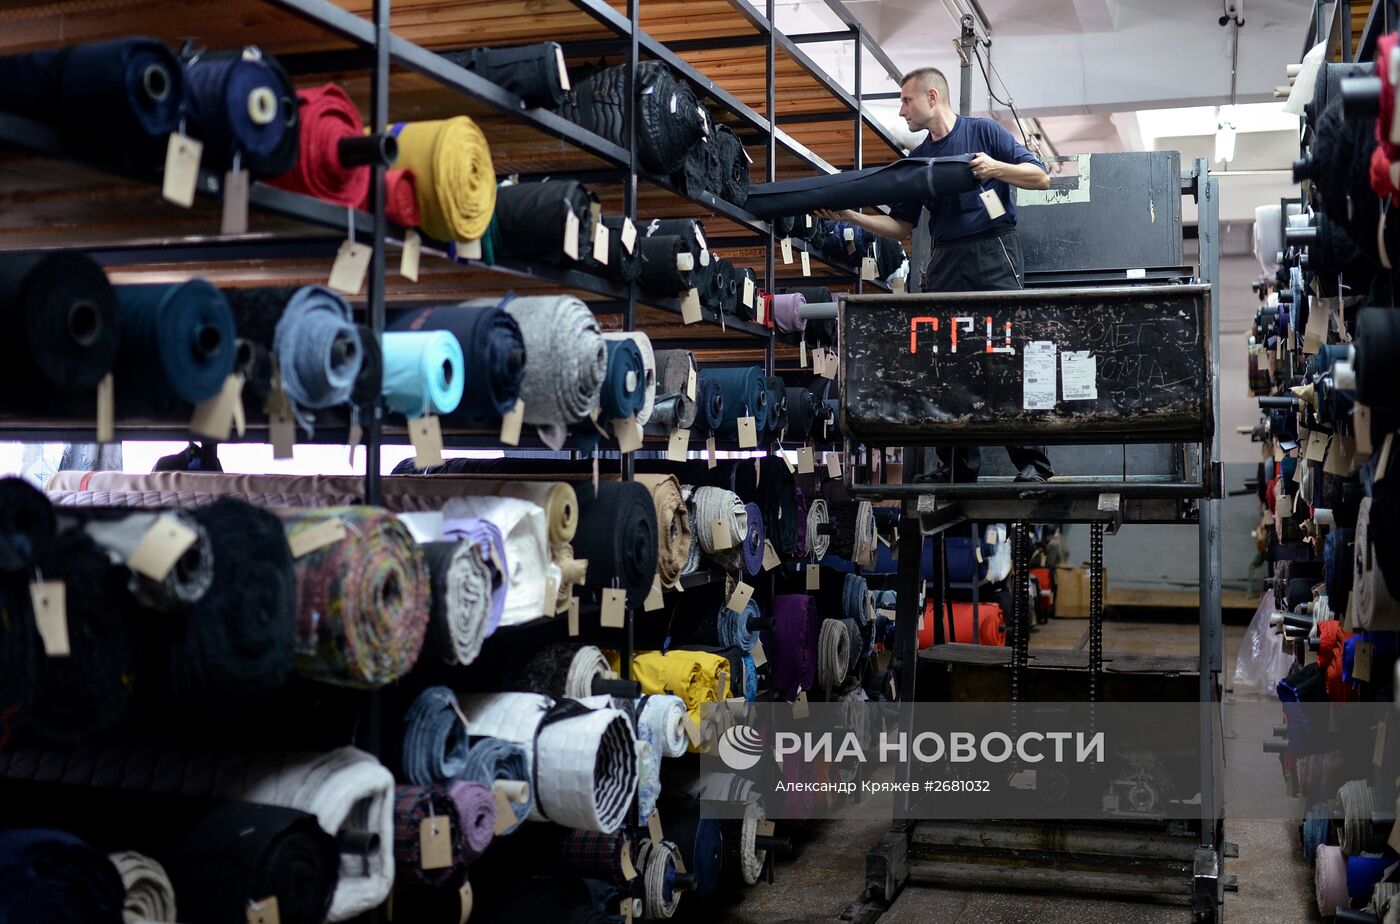 Швейная фабрика "Синар" в Новосибирской области